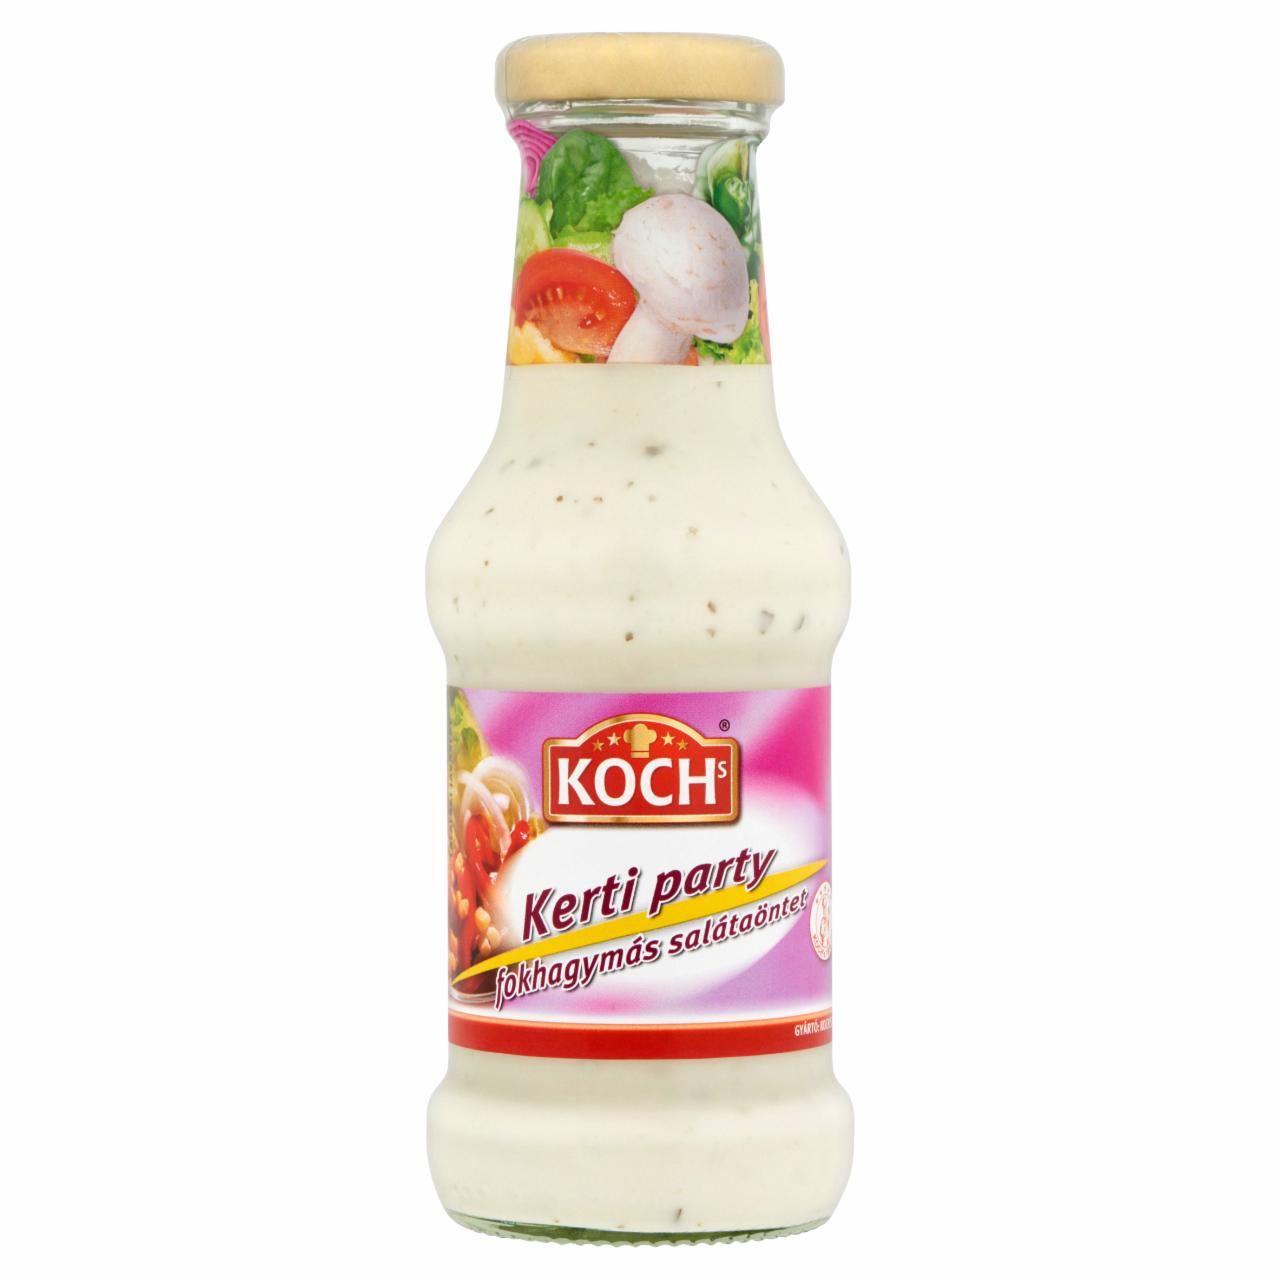 Képek - Koch's Kerti Party fokhagymás salátaöntet 250 ml